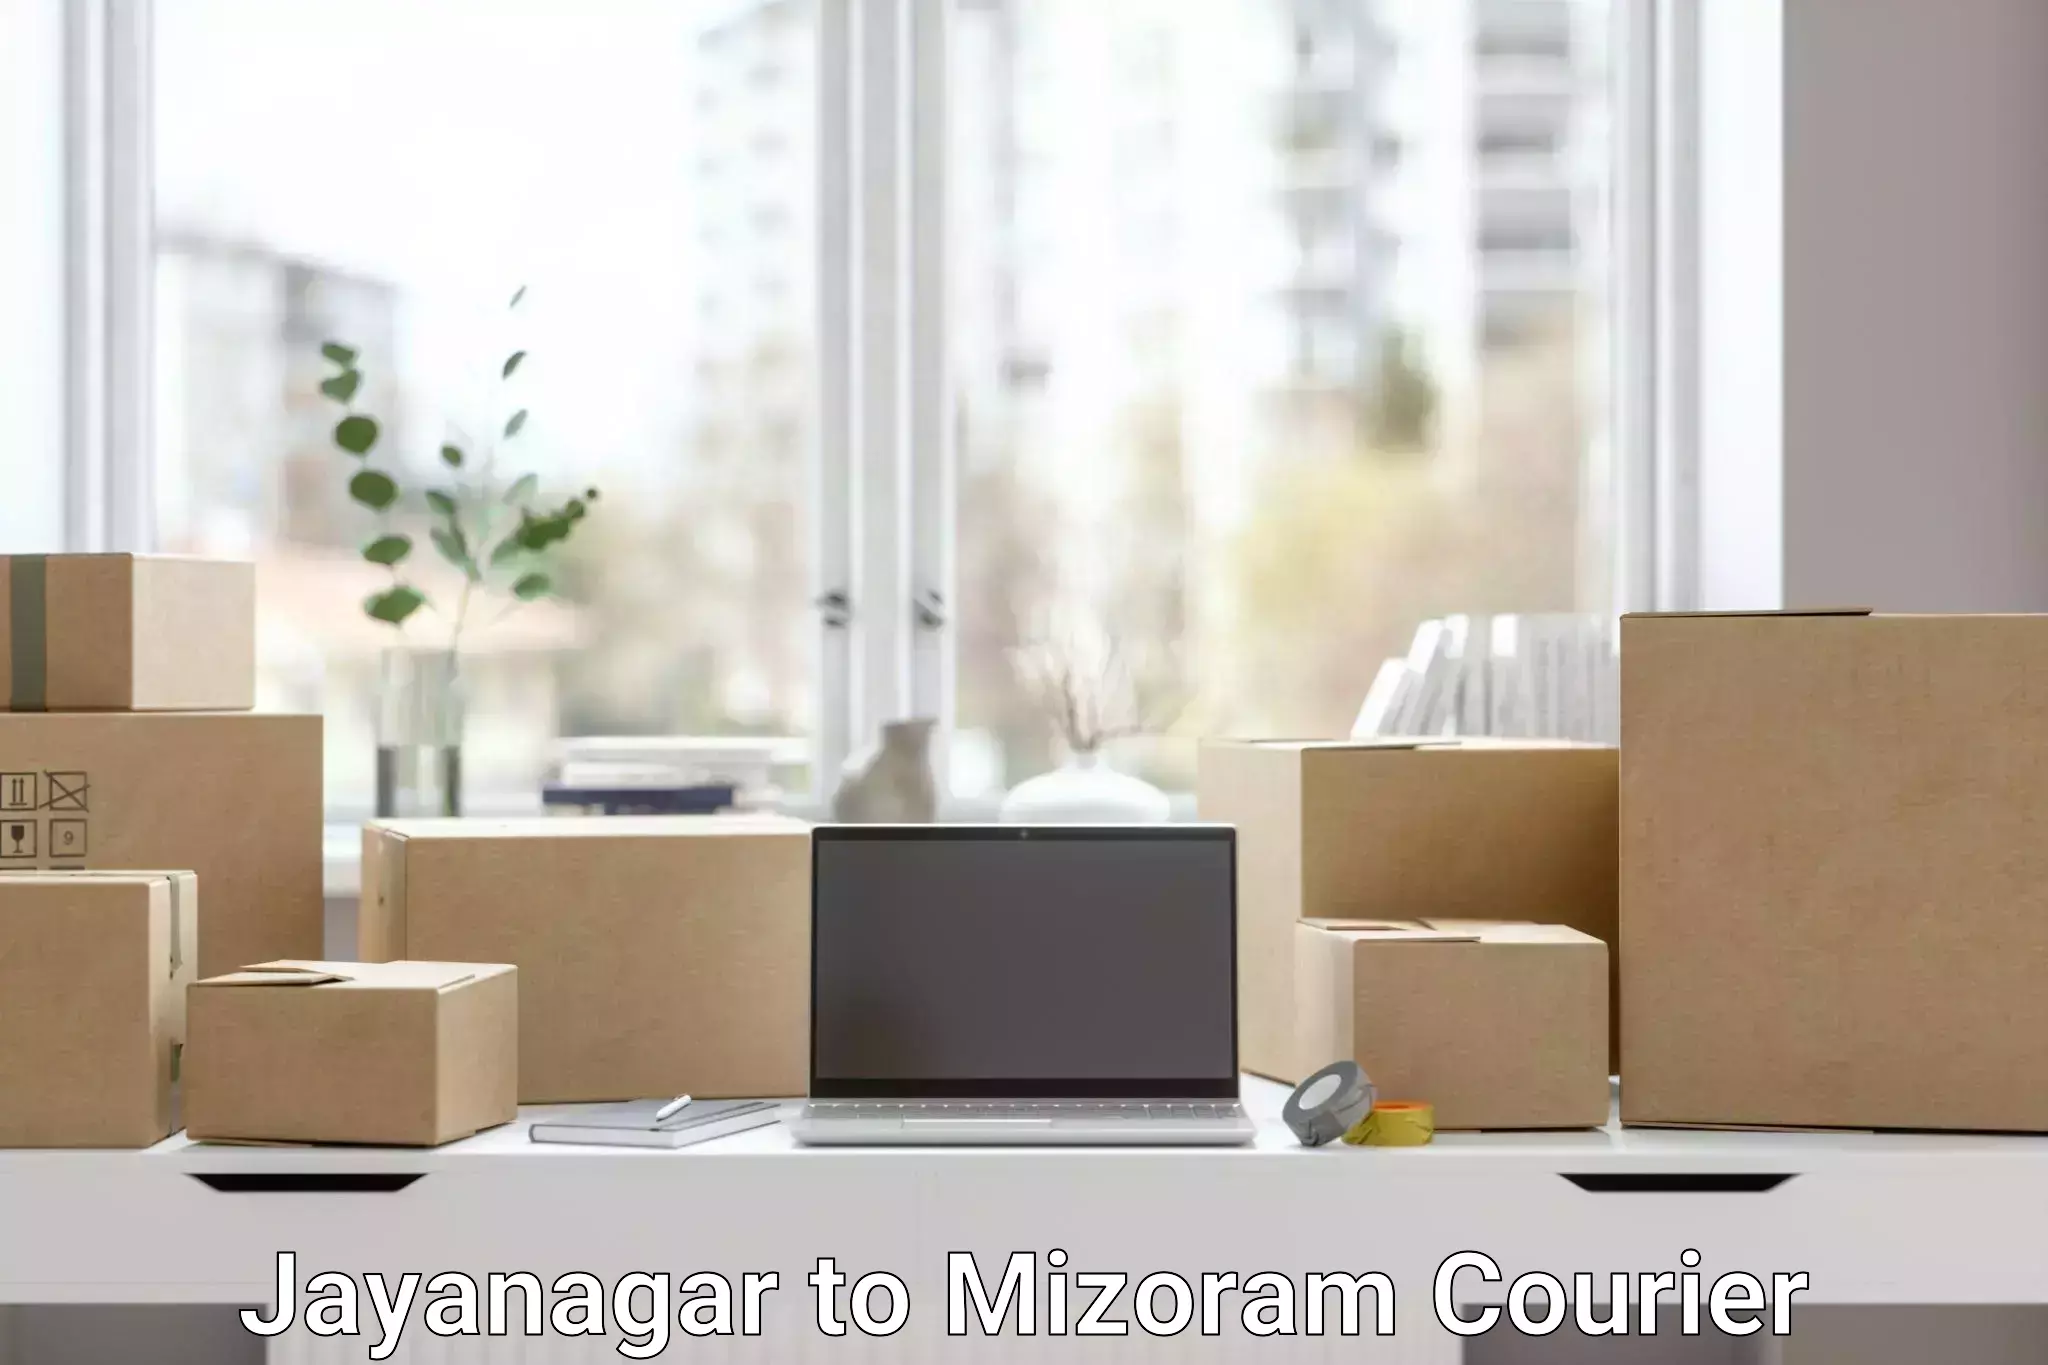 Efficient parcel service Jayanagar to Aizawl